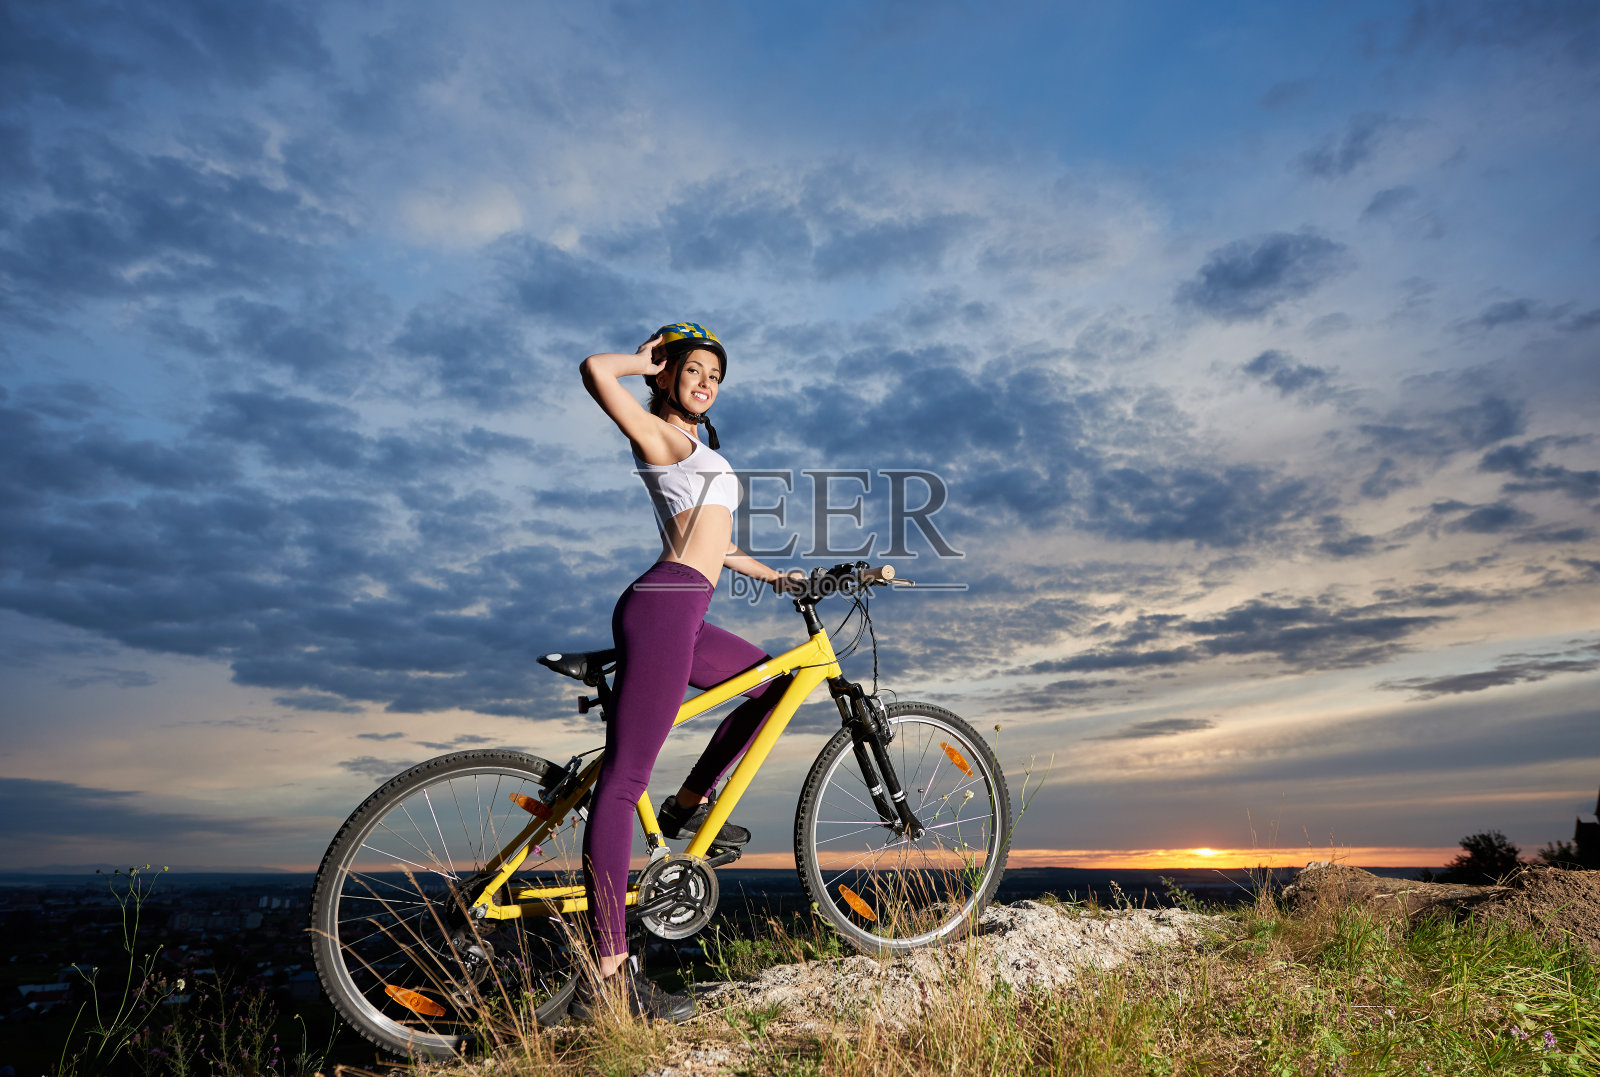 骑自行车的美女背影图片